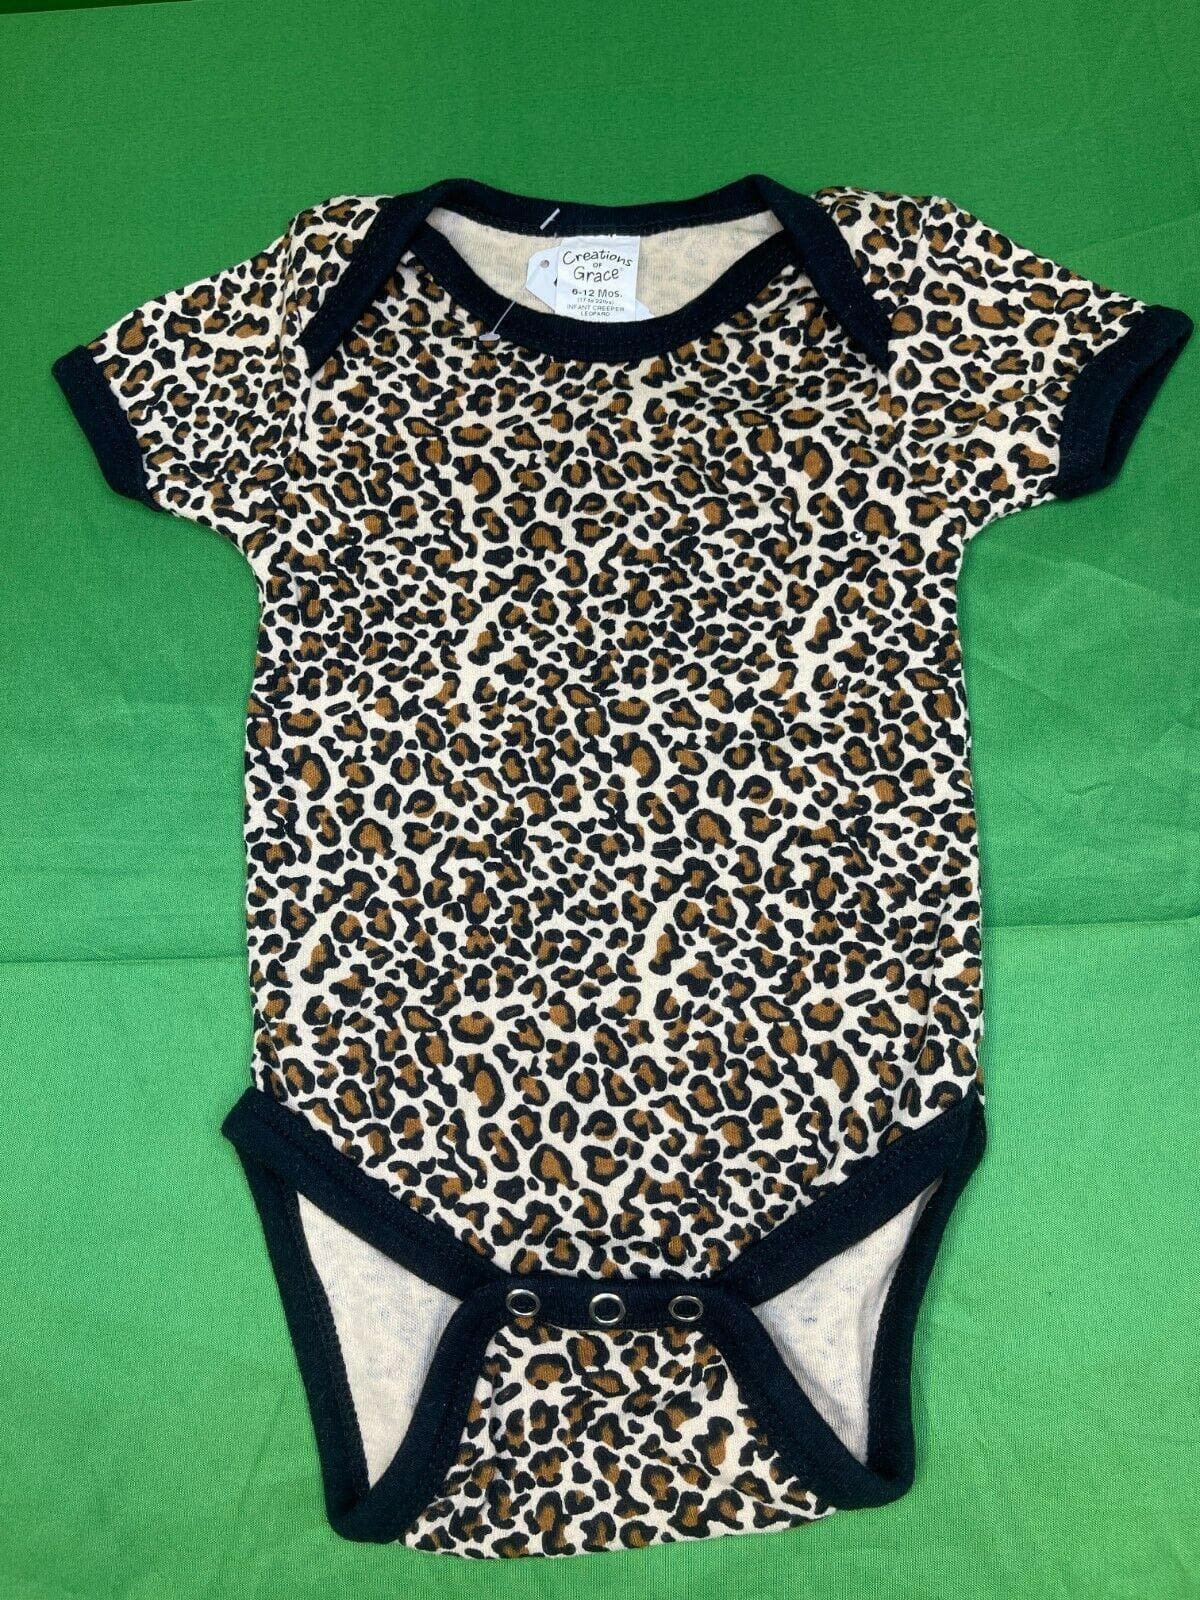 NFL Jacksonville Jaguars Leopard Print Bodysuit/Vest 6-12 months